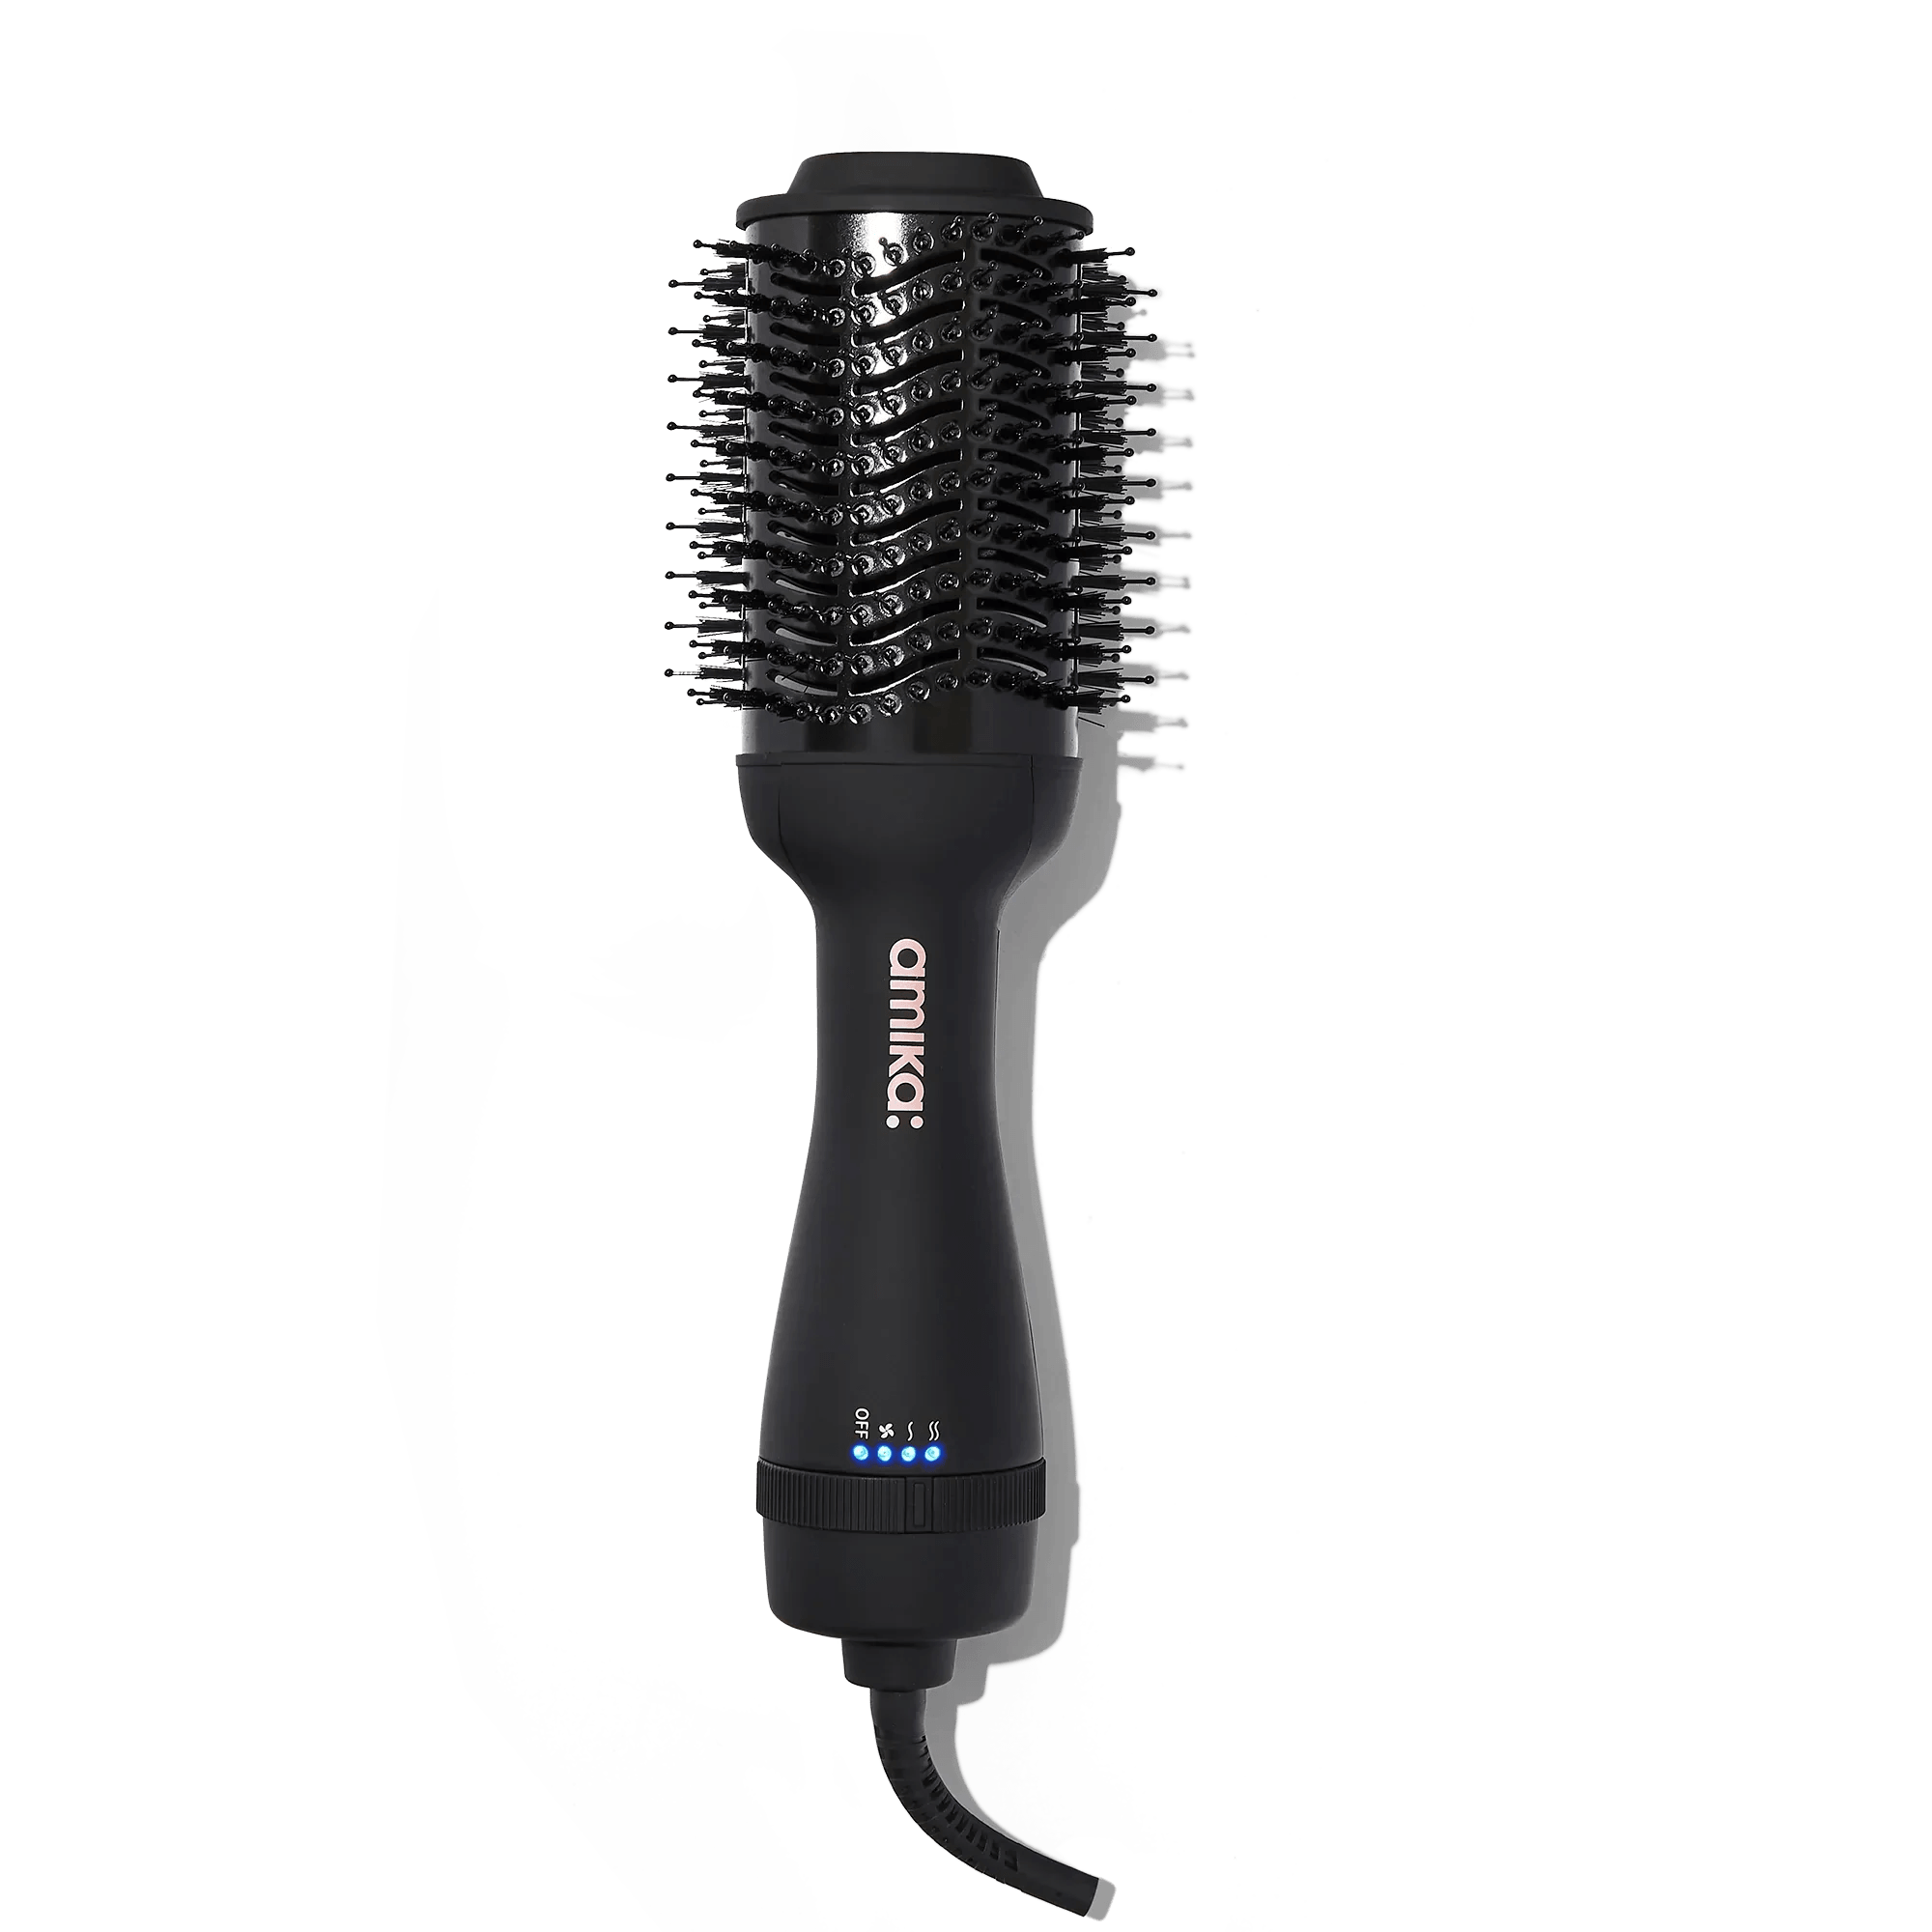 Amika: Hair Blow Dryer Brush 2.0 | Hårføner | Amika | JK SHOP | JK Barber og herre frisør | Lavepriser | Best